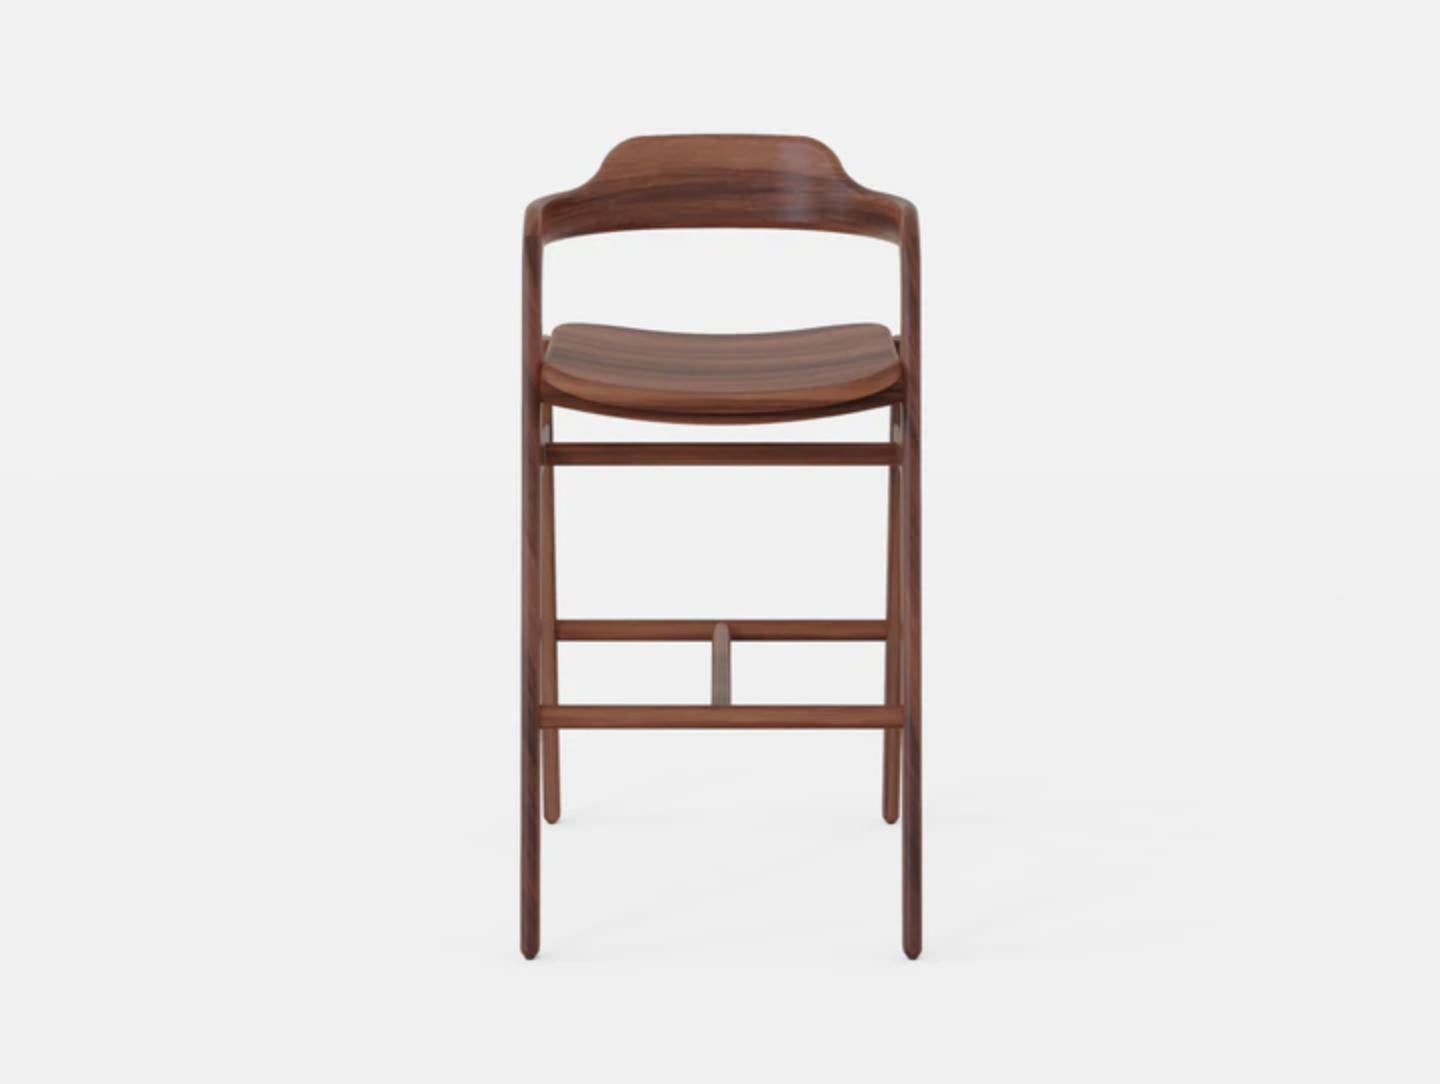 Chaise haute Balance de Sebastián Angeles
Matériau : Noyer
Dimensions : L 45 x P 40 x 100 cm
Également disponible : Autres couleurs disponibles.

L'amour des processus, les propriétés des matériaux, les détails et les concepts font de Dorica Taller